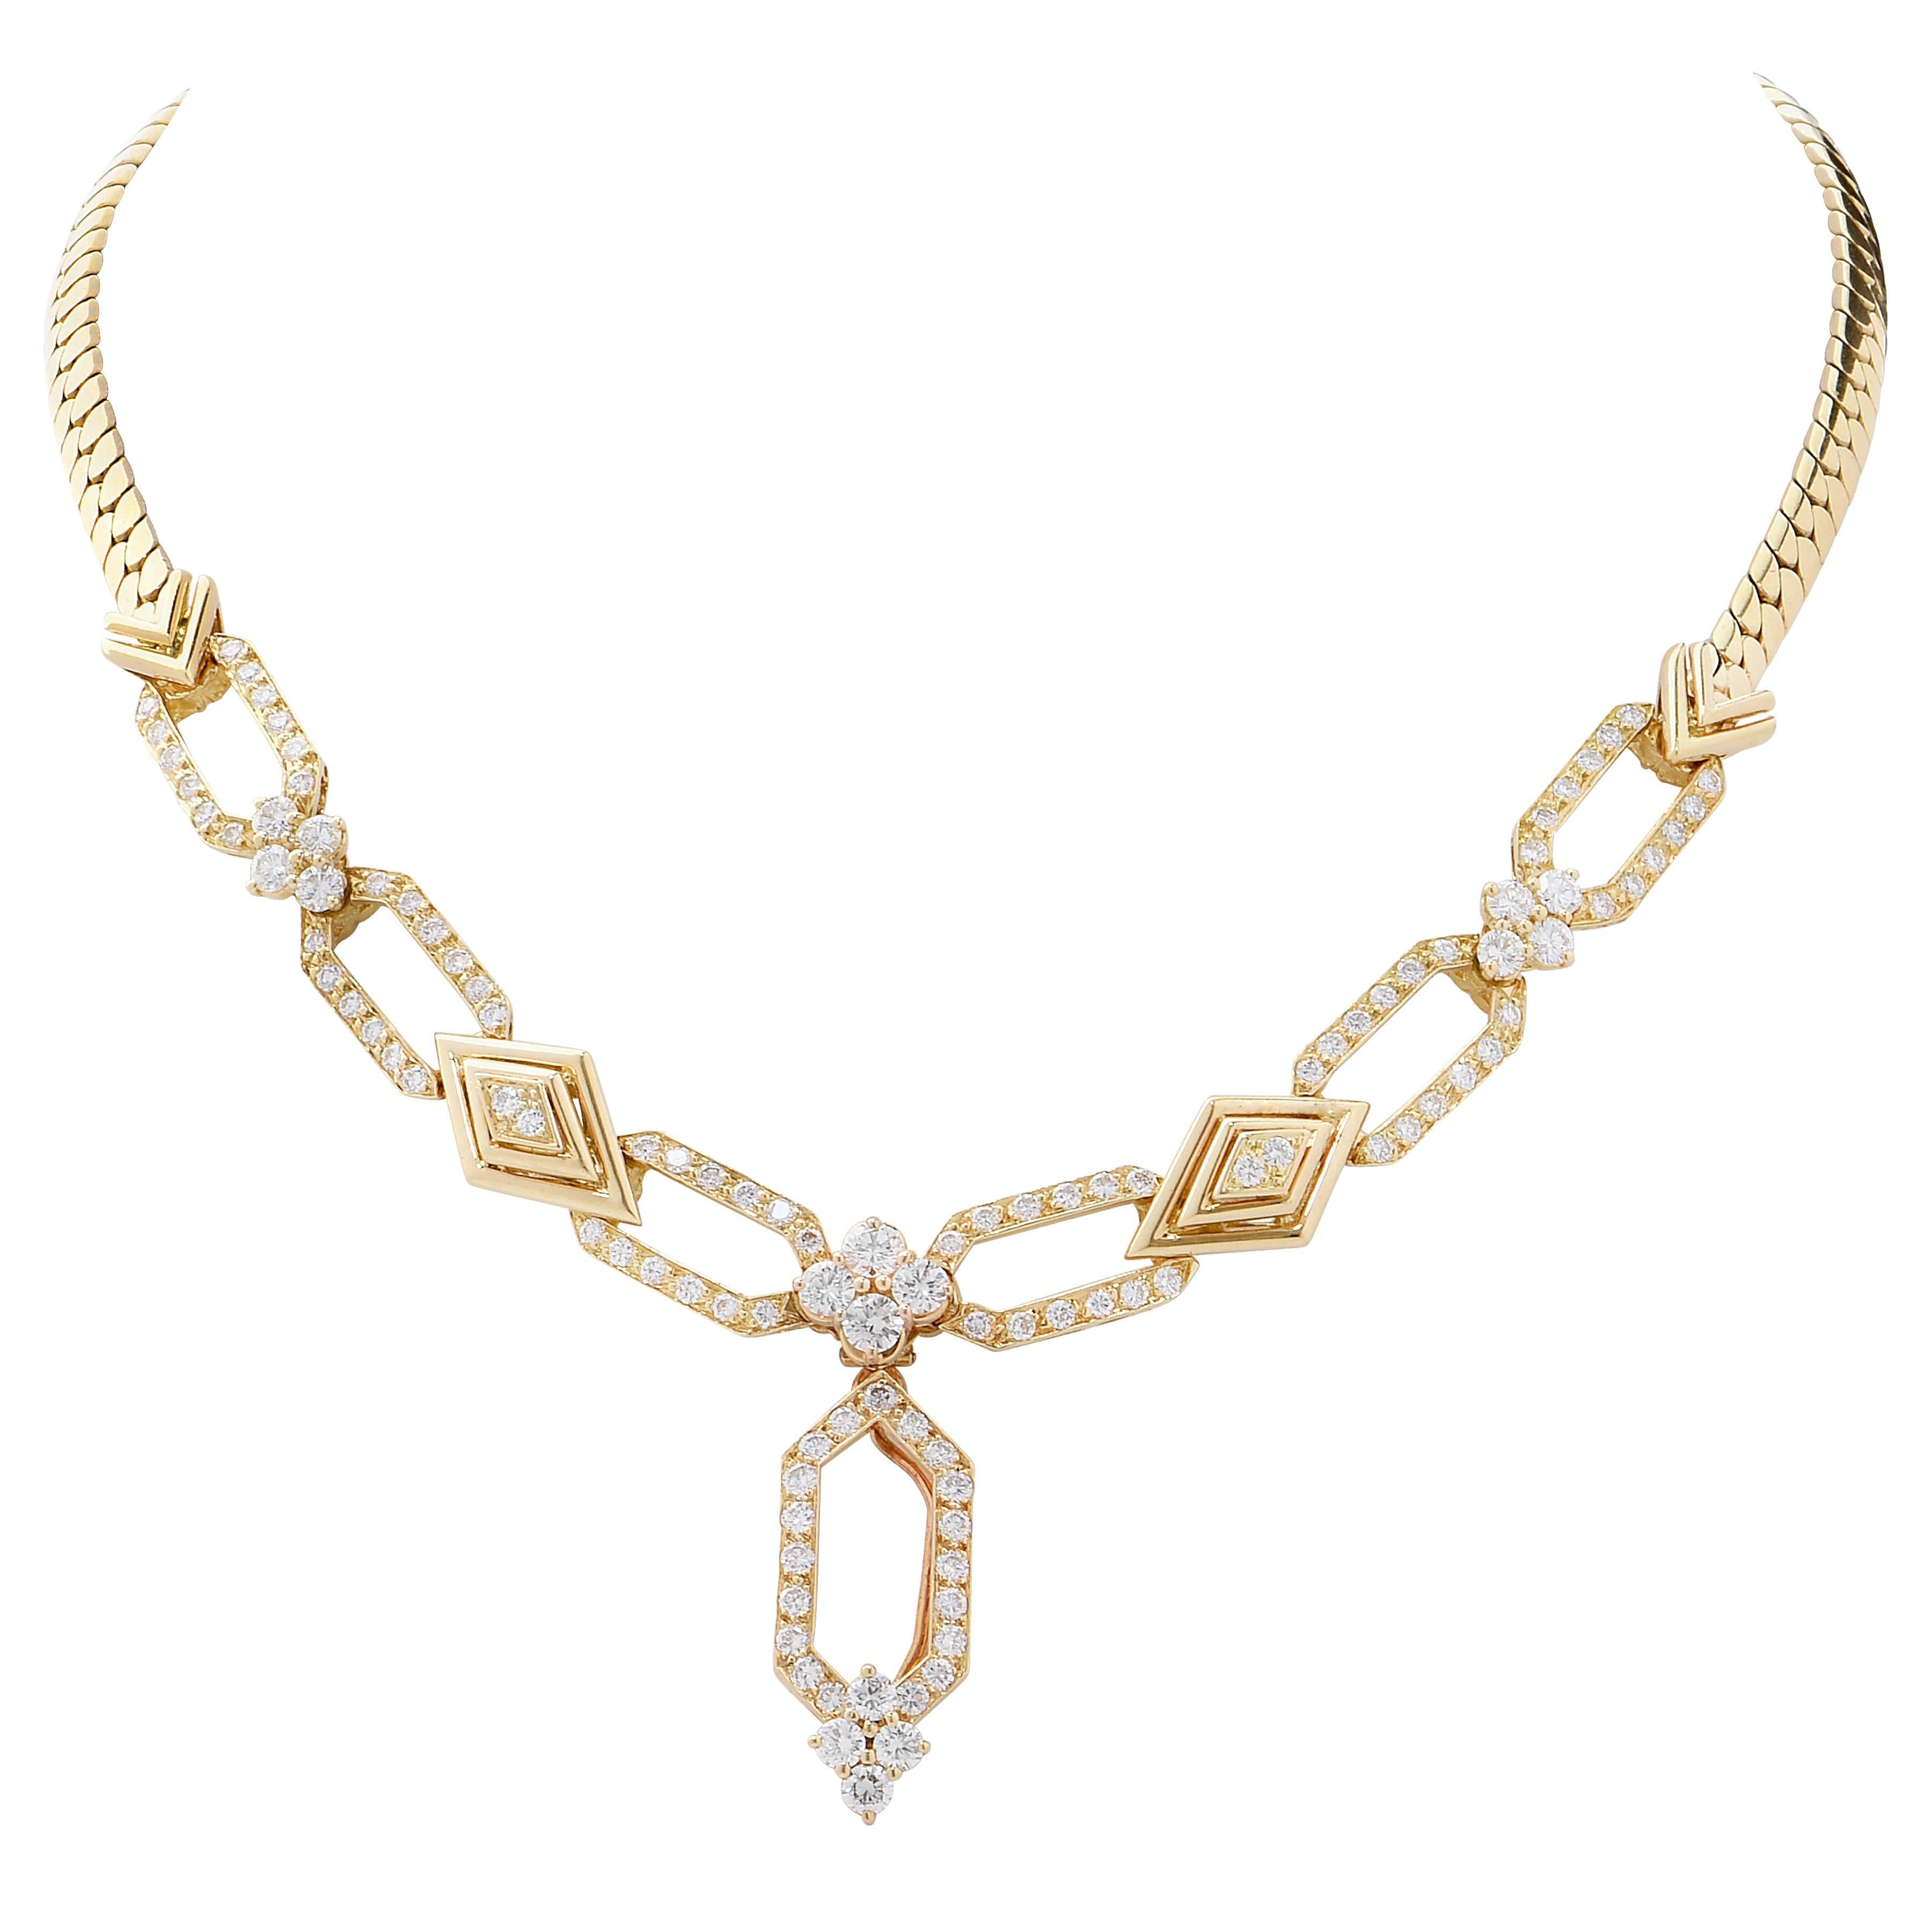 Cette ravissante suite de bijoux en diamant français Mecan Elde comprend un collier, un bracelet et des boucles d'oreilles. 
Le poids total des diamants est de 10,35 carats, soit 265 diamants ronds de taille brillant.
La longueur du collier est de